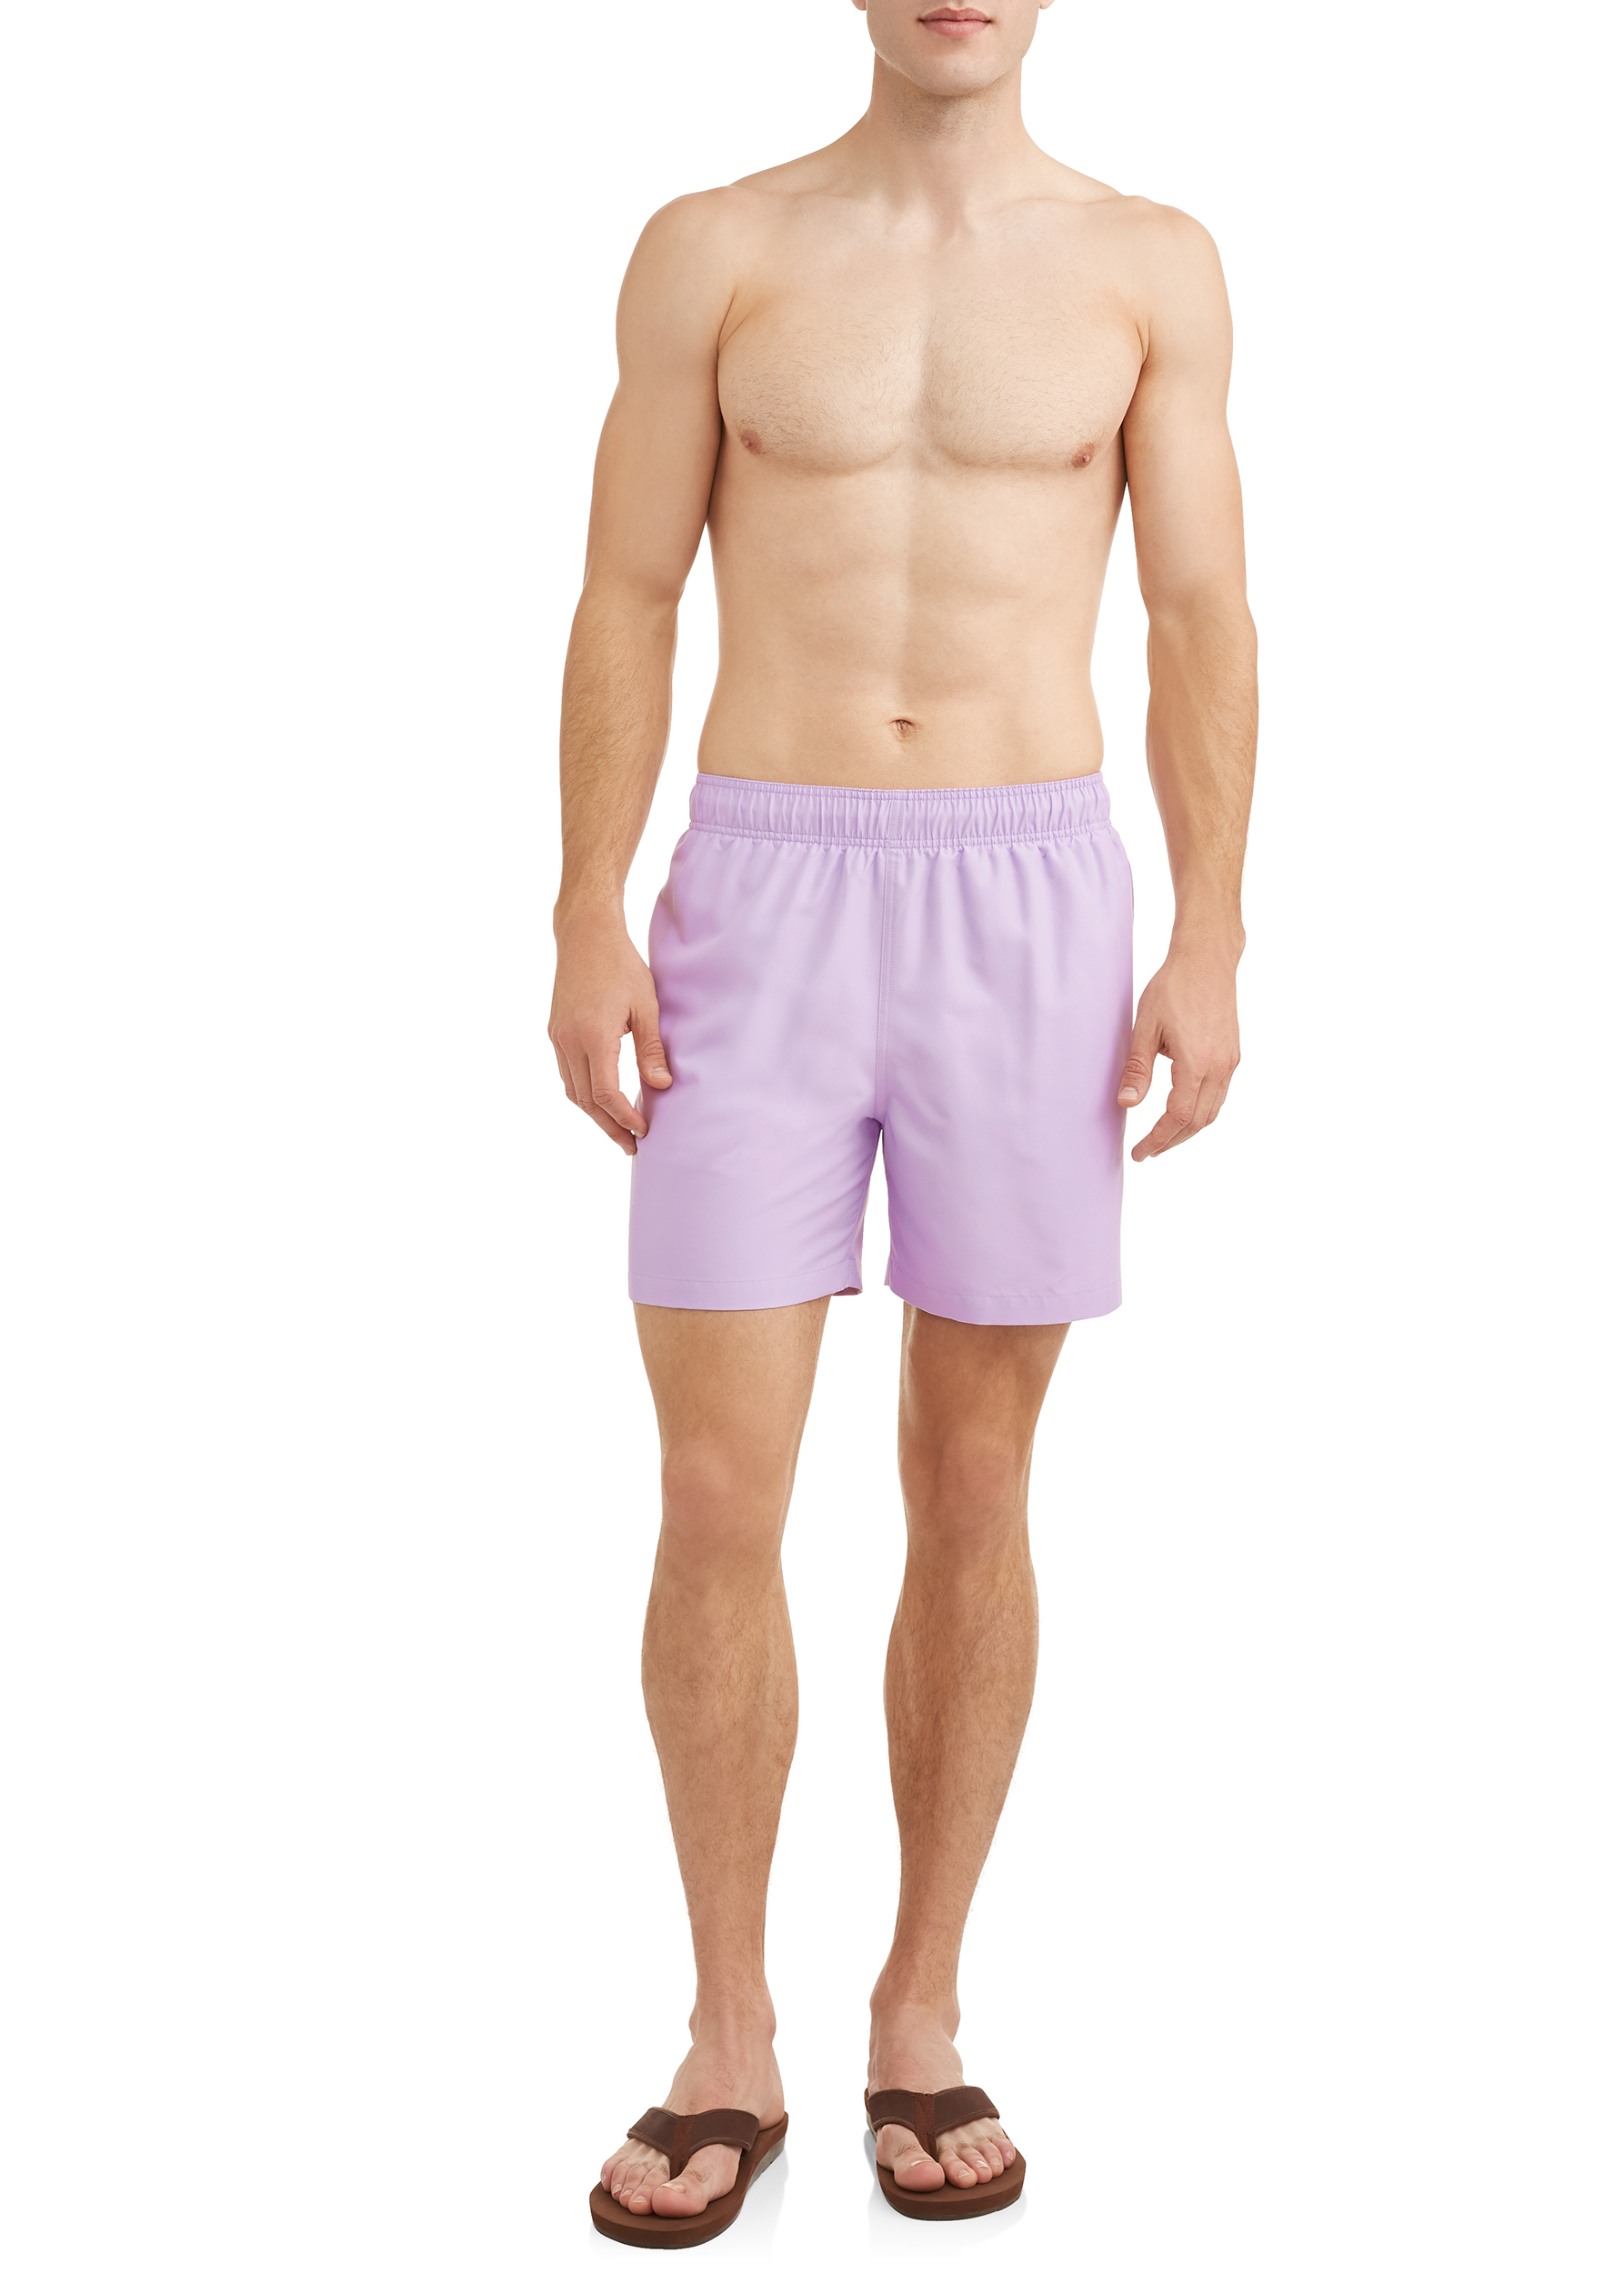 George Basic 6-inch Swim Short, up to size 5XL - image 3 of 4